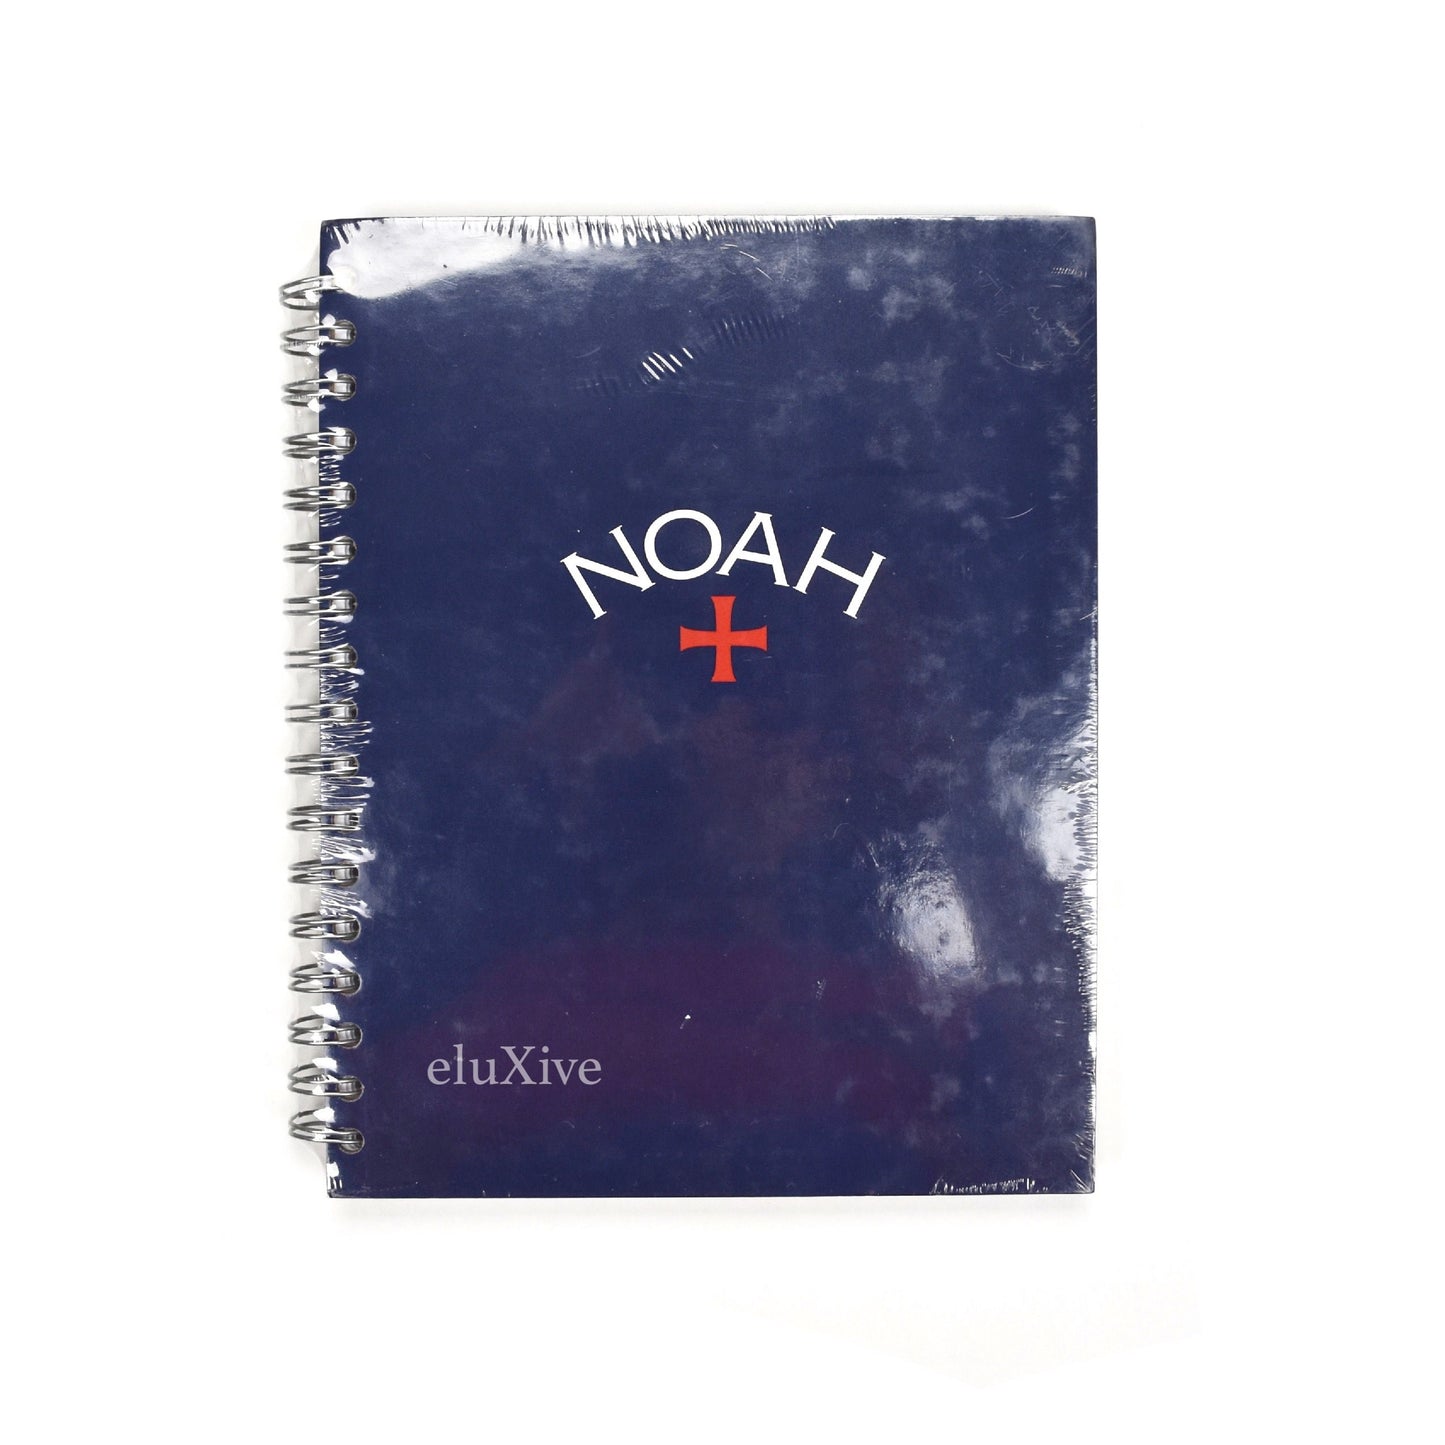 Noah - Navy Core Logo Notebook (SS19)